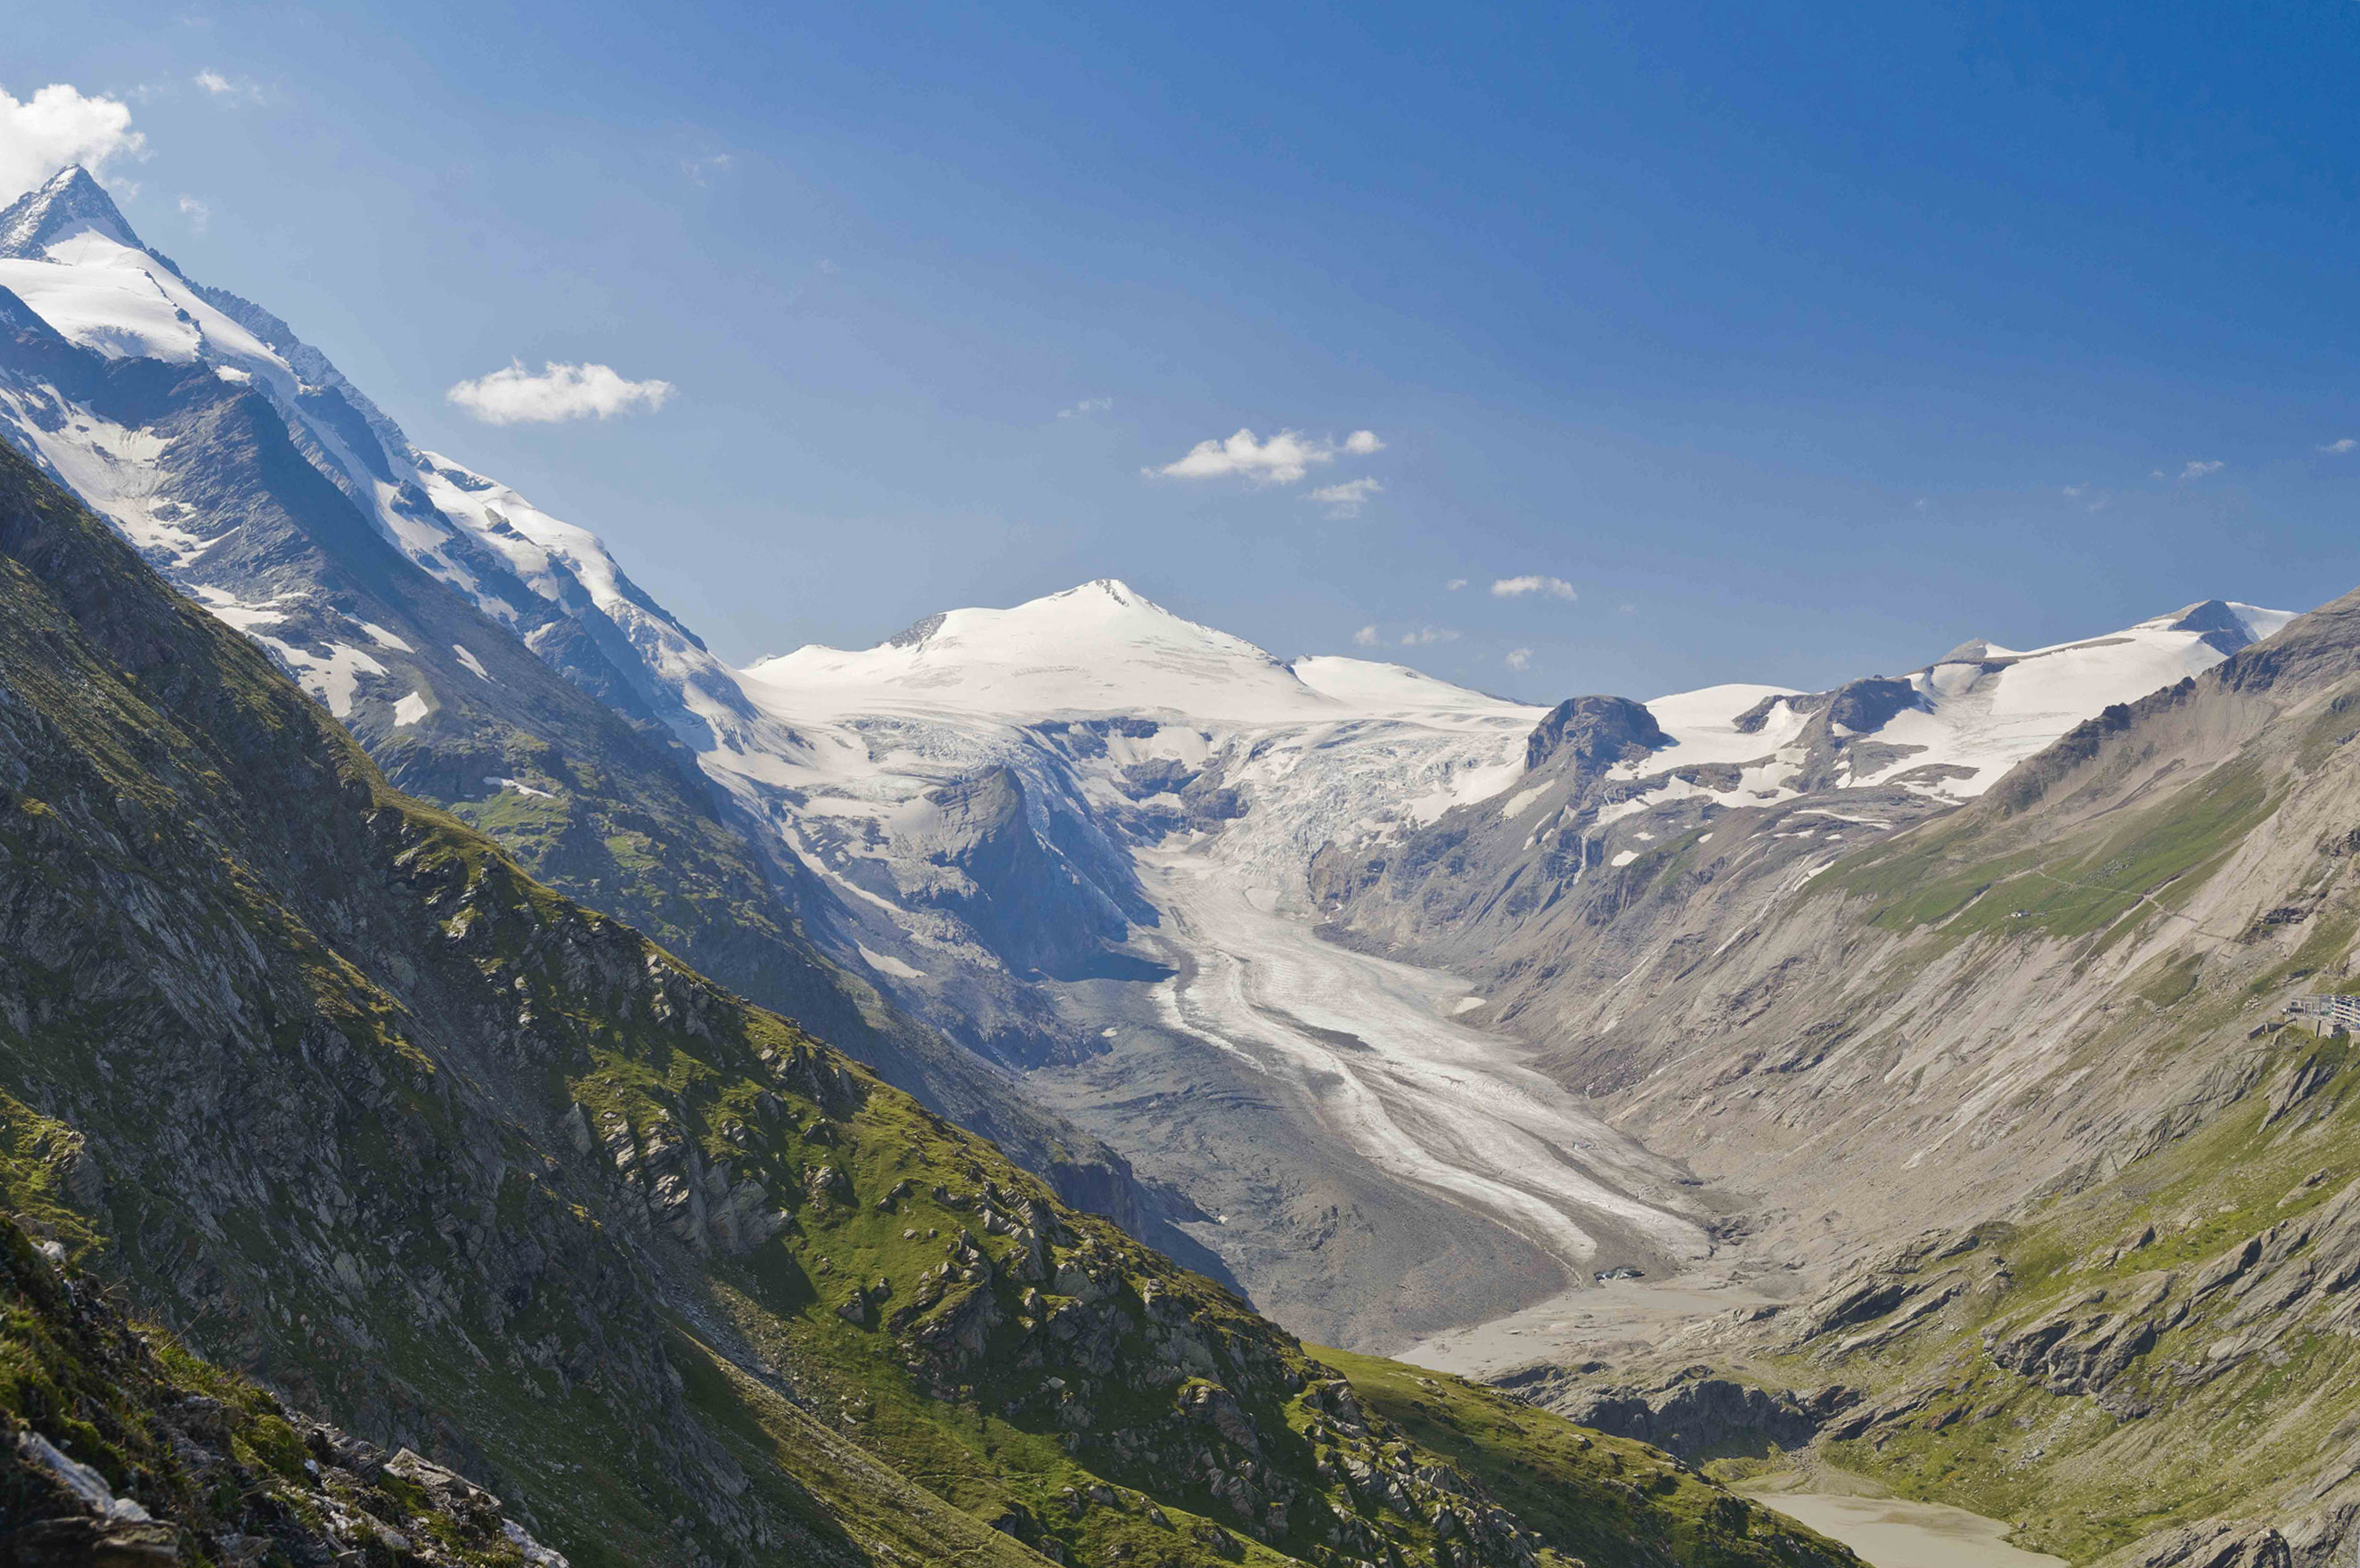 Pasterze 2012: eine in die umgebende Bergwelt tief eingesunkene Gletscherzunge Foto: Alpenverein/N. Freudenthaler, Gletscherbericht 2016